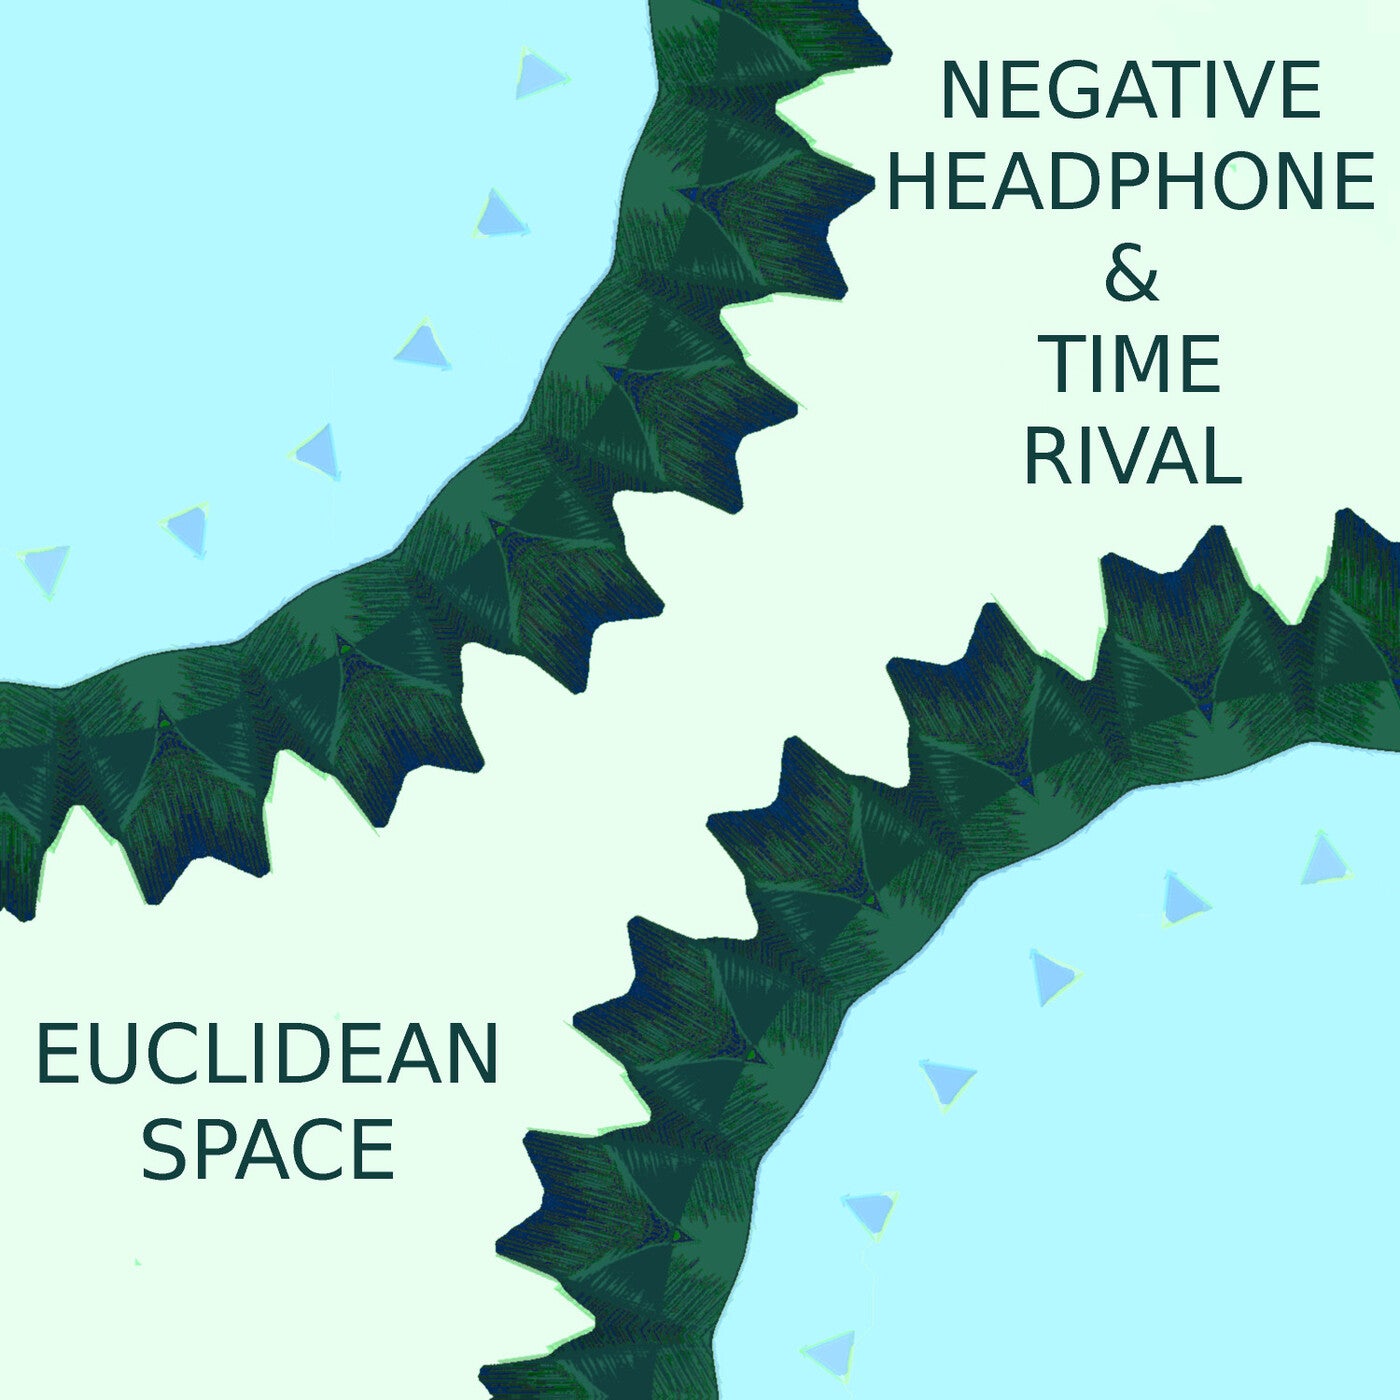 Euclidean Space